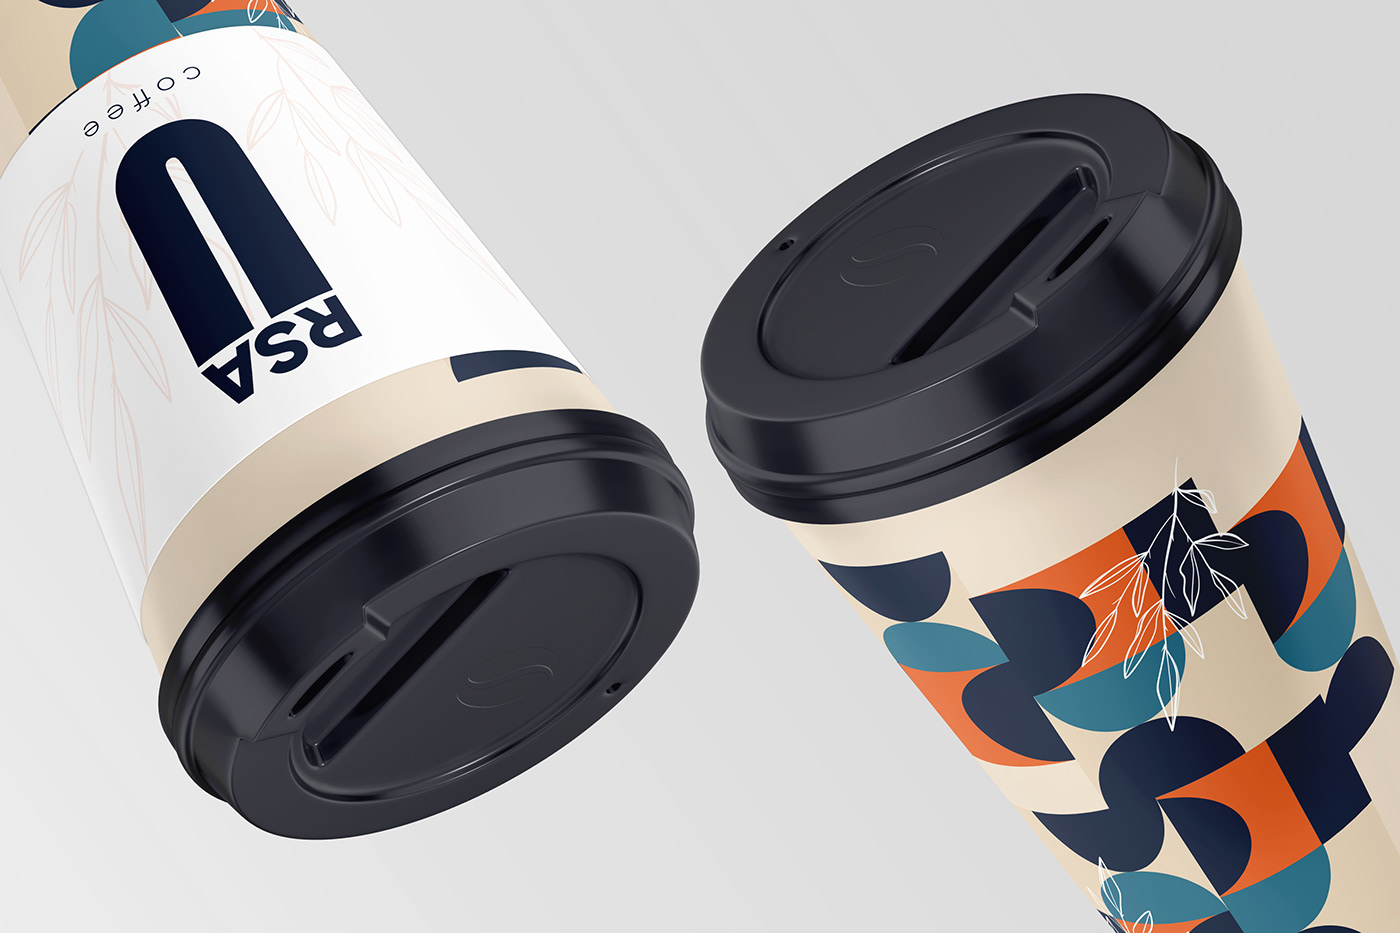 Coffee coffeepackagedesign coffepackaging design package Packaging